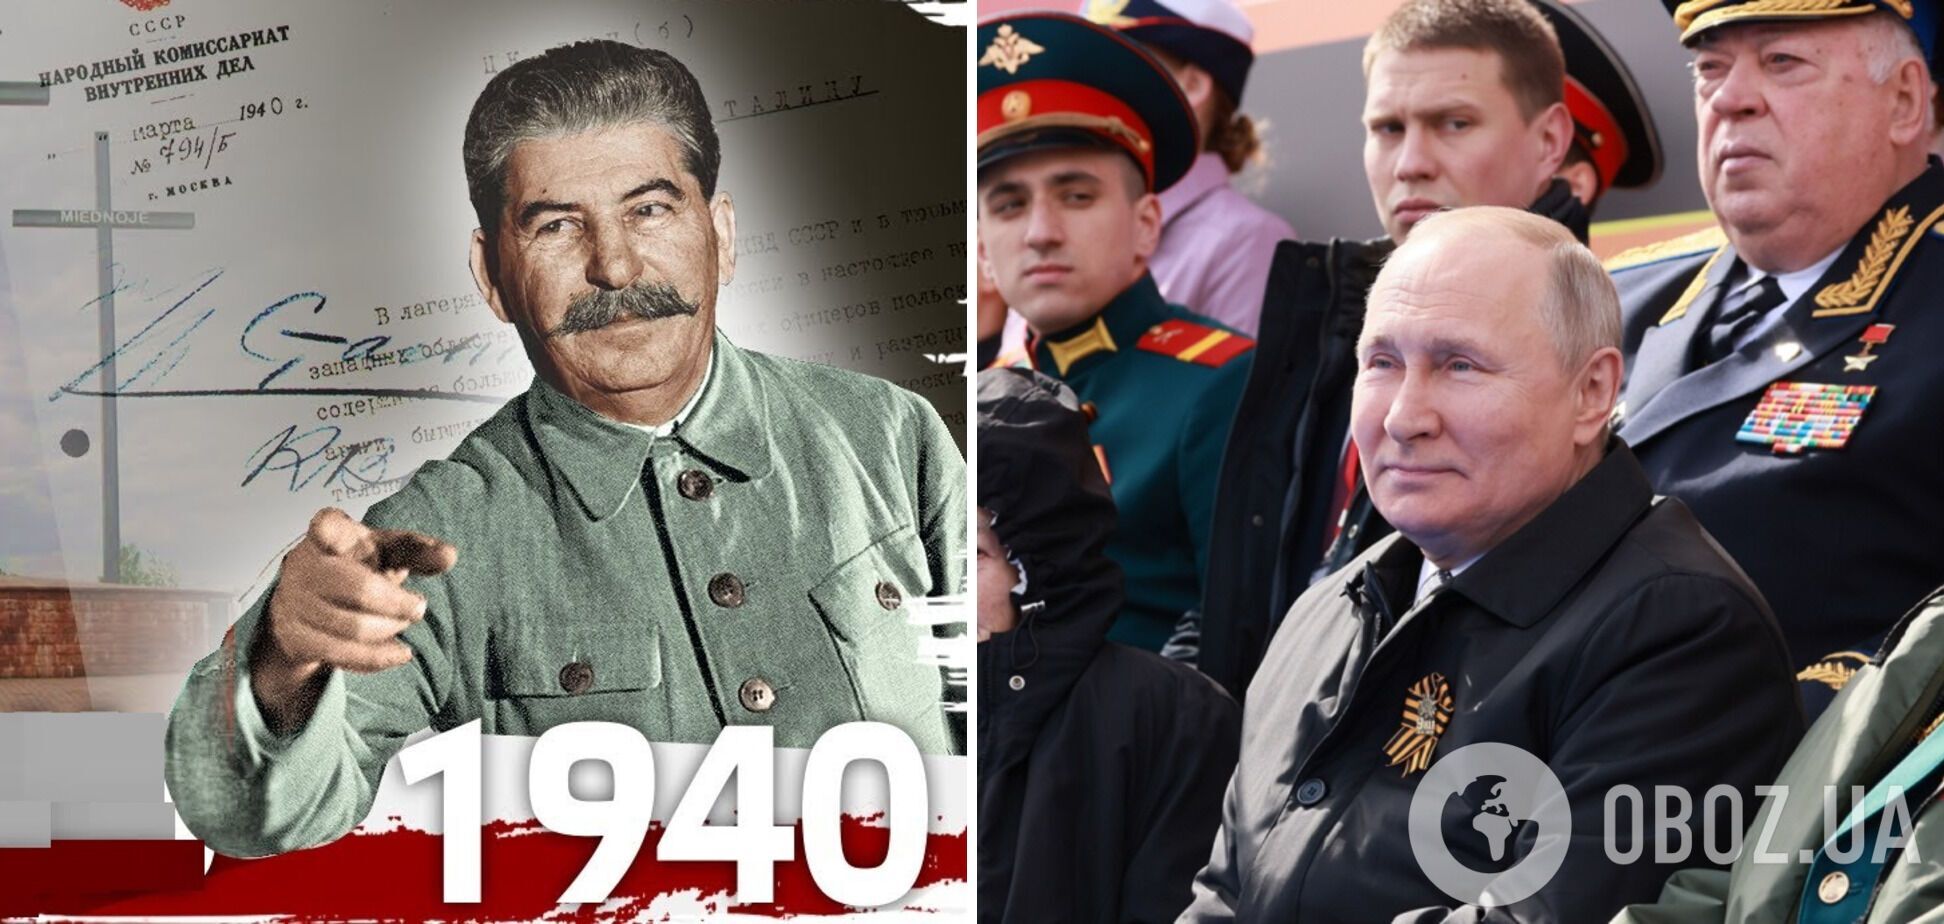 В России извлекают из нафталина забытые советские мифы о событиях 1940-х годов